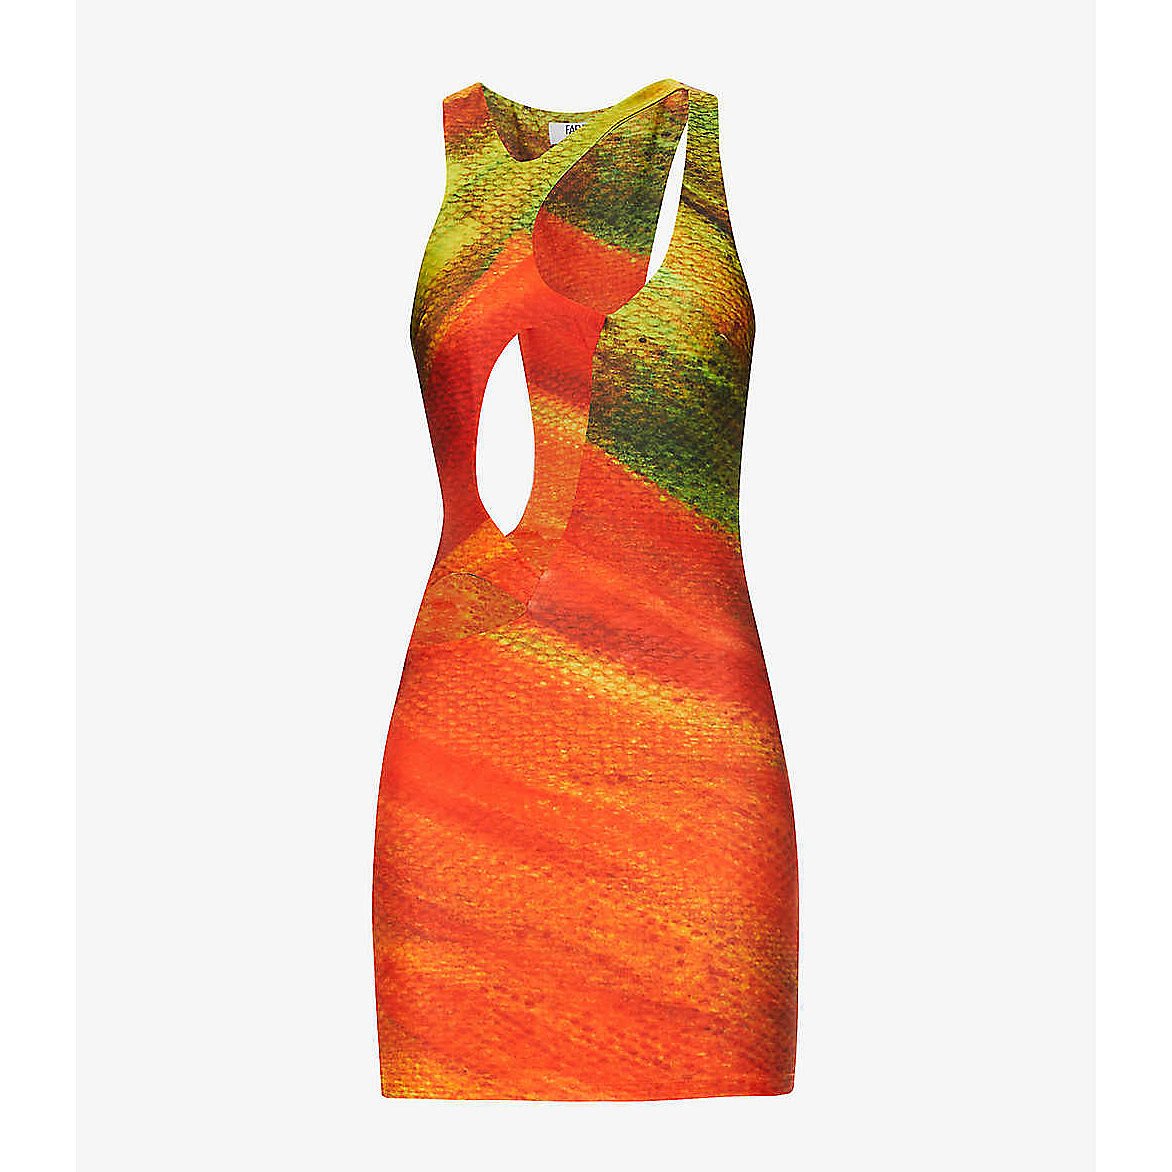 FARAI LONDON Kekeo Abstract Print Mini Dress